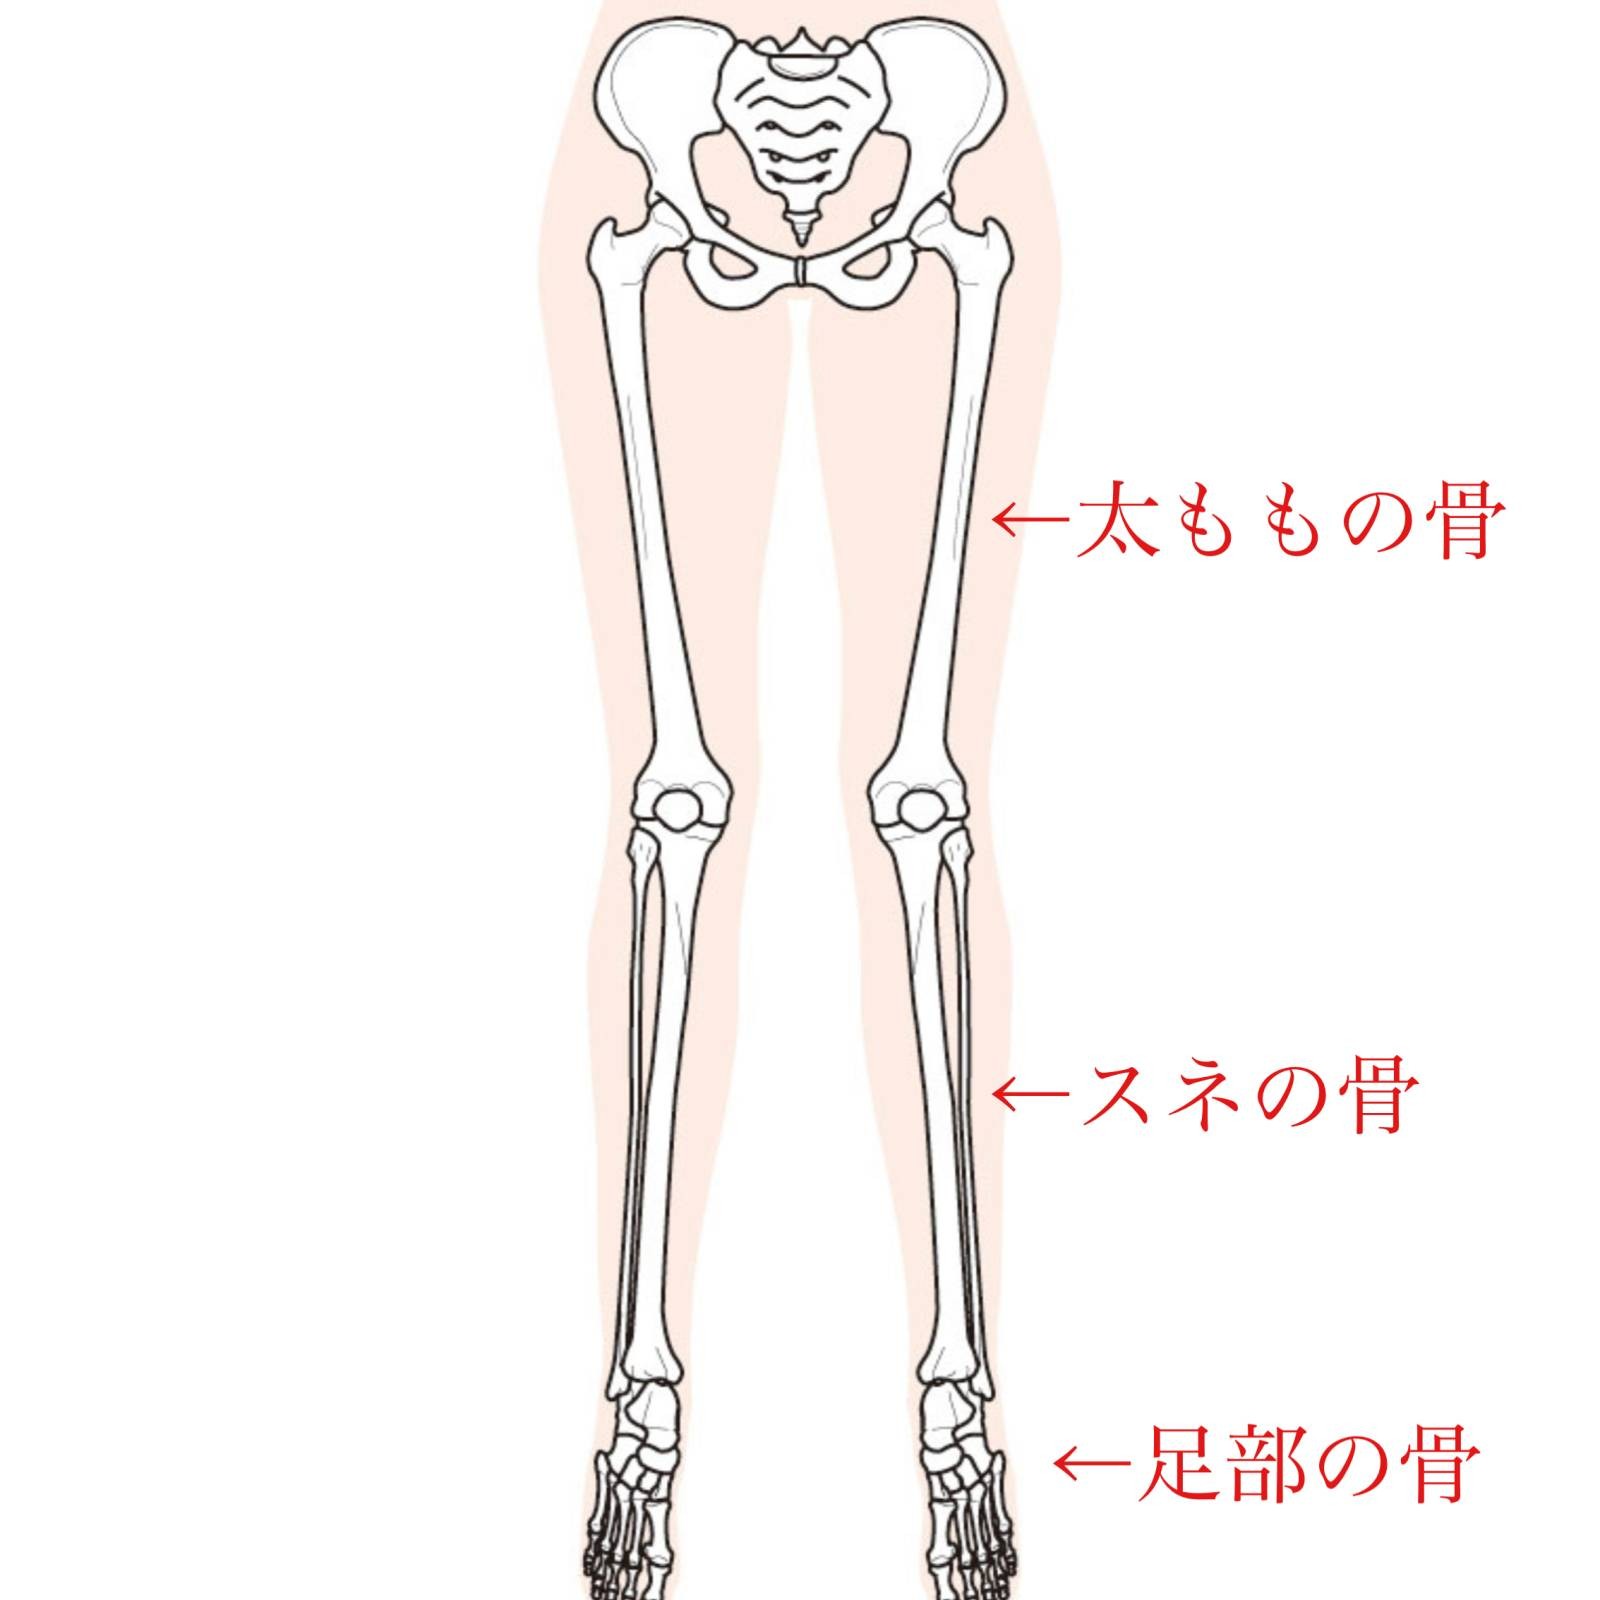 ガチガチ股関節の方向けストレッチ 股関節が硬い人はスネも硬い 美脚にも効果大 スネ転がし ヨガジャーナルオンライン